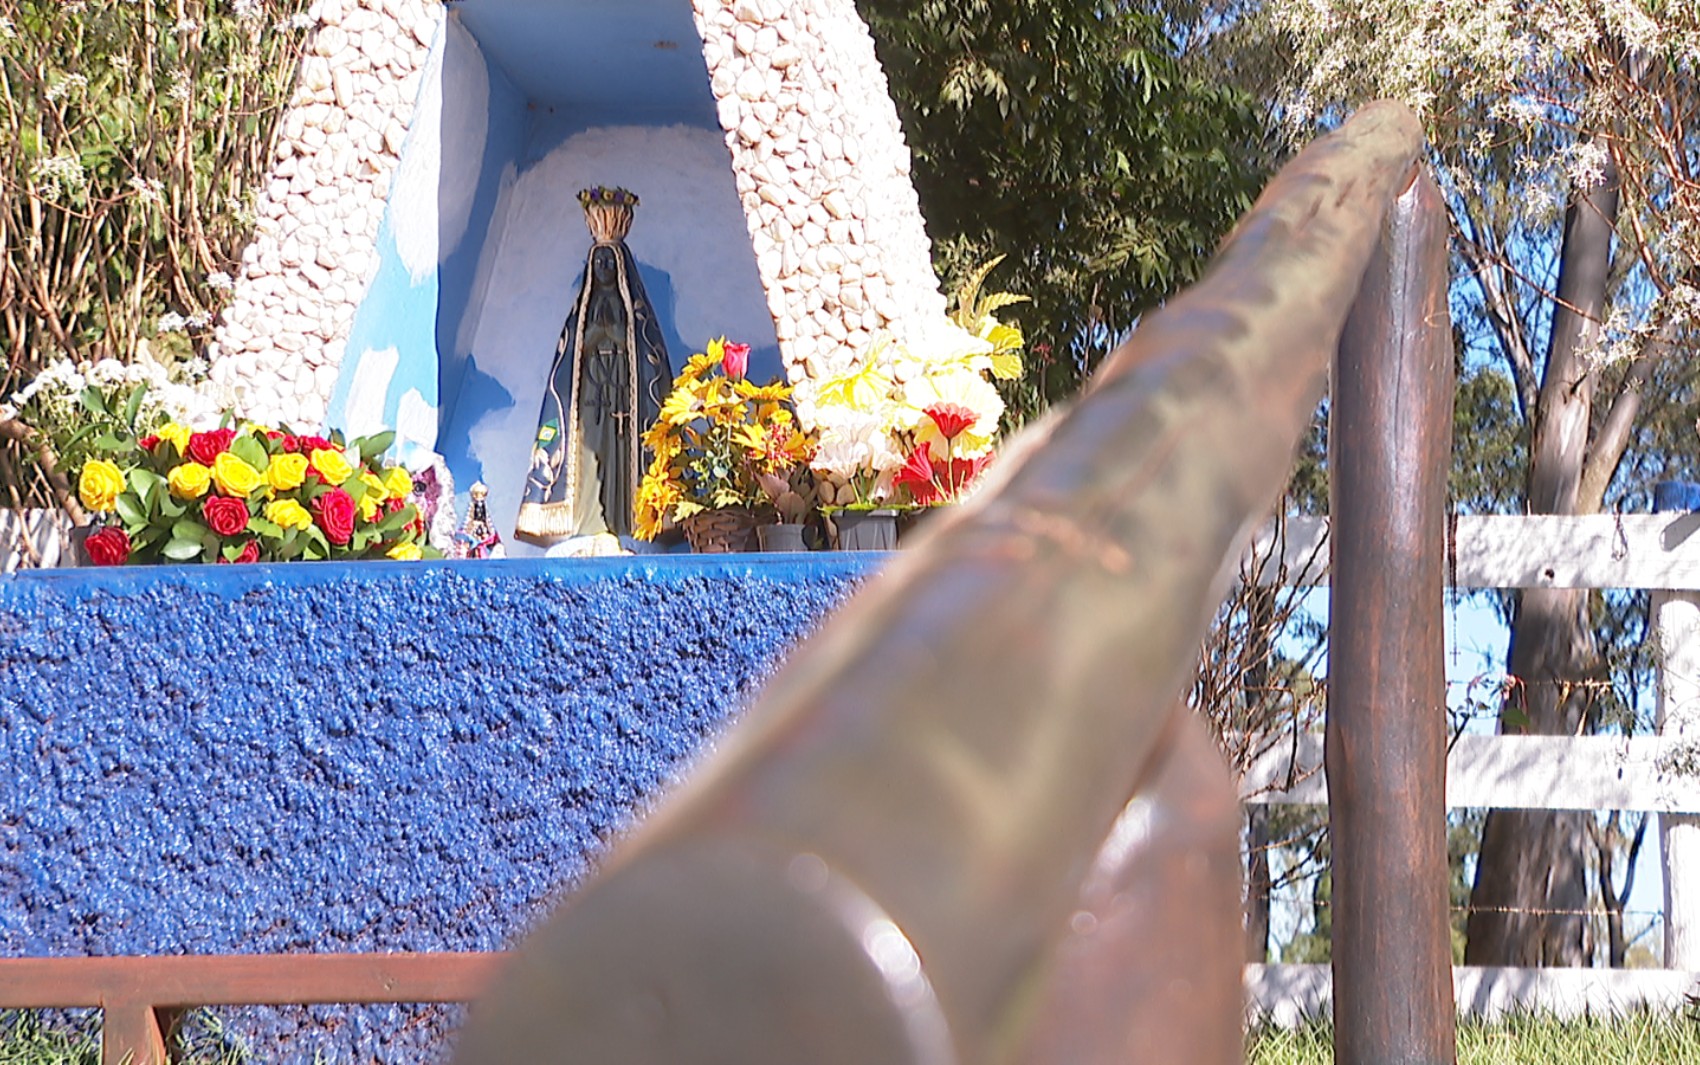 Trecho do Caminho da Fé em Cravinhos ganha nova imagem de Nossa Senhora após antiga ser vandalizada